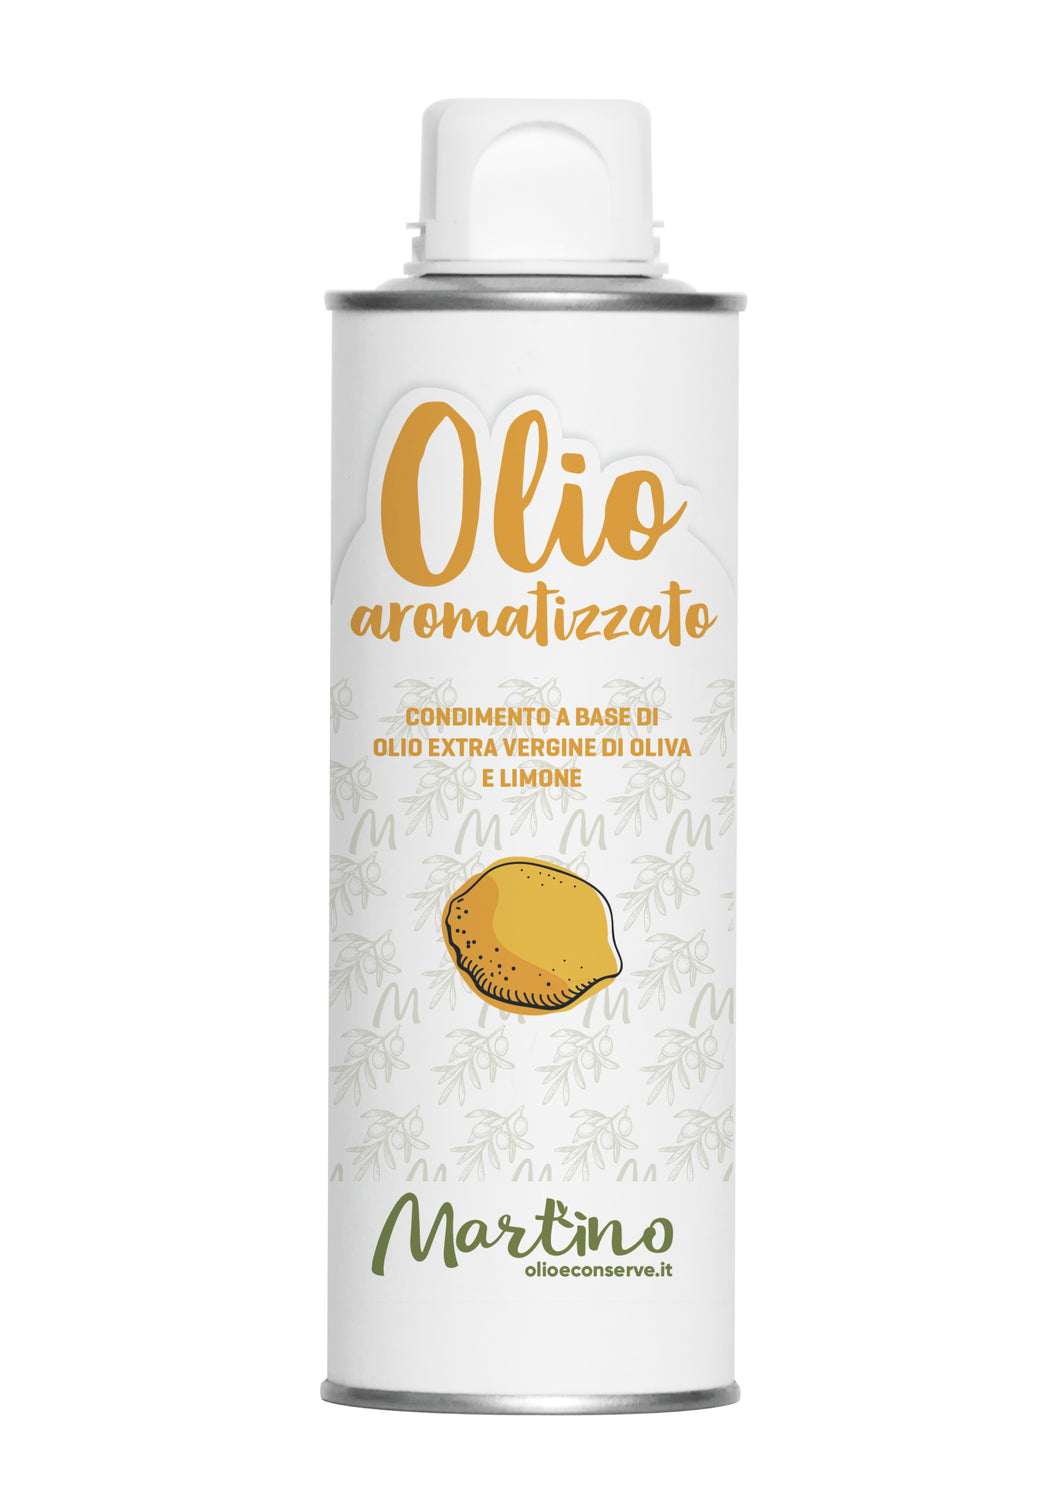 Martino - Condimento Aromatizzato al Limone con Olio Extravergine d'Oliva - Lattina 250 ml con tappo Antiriempimento